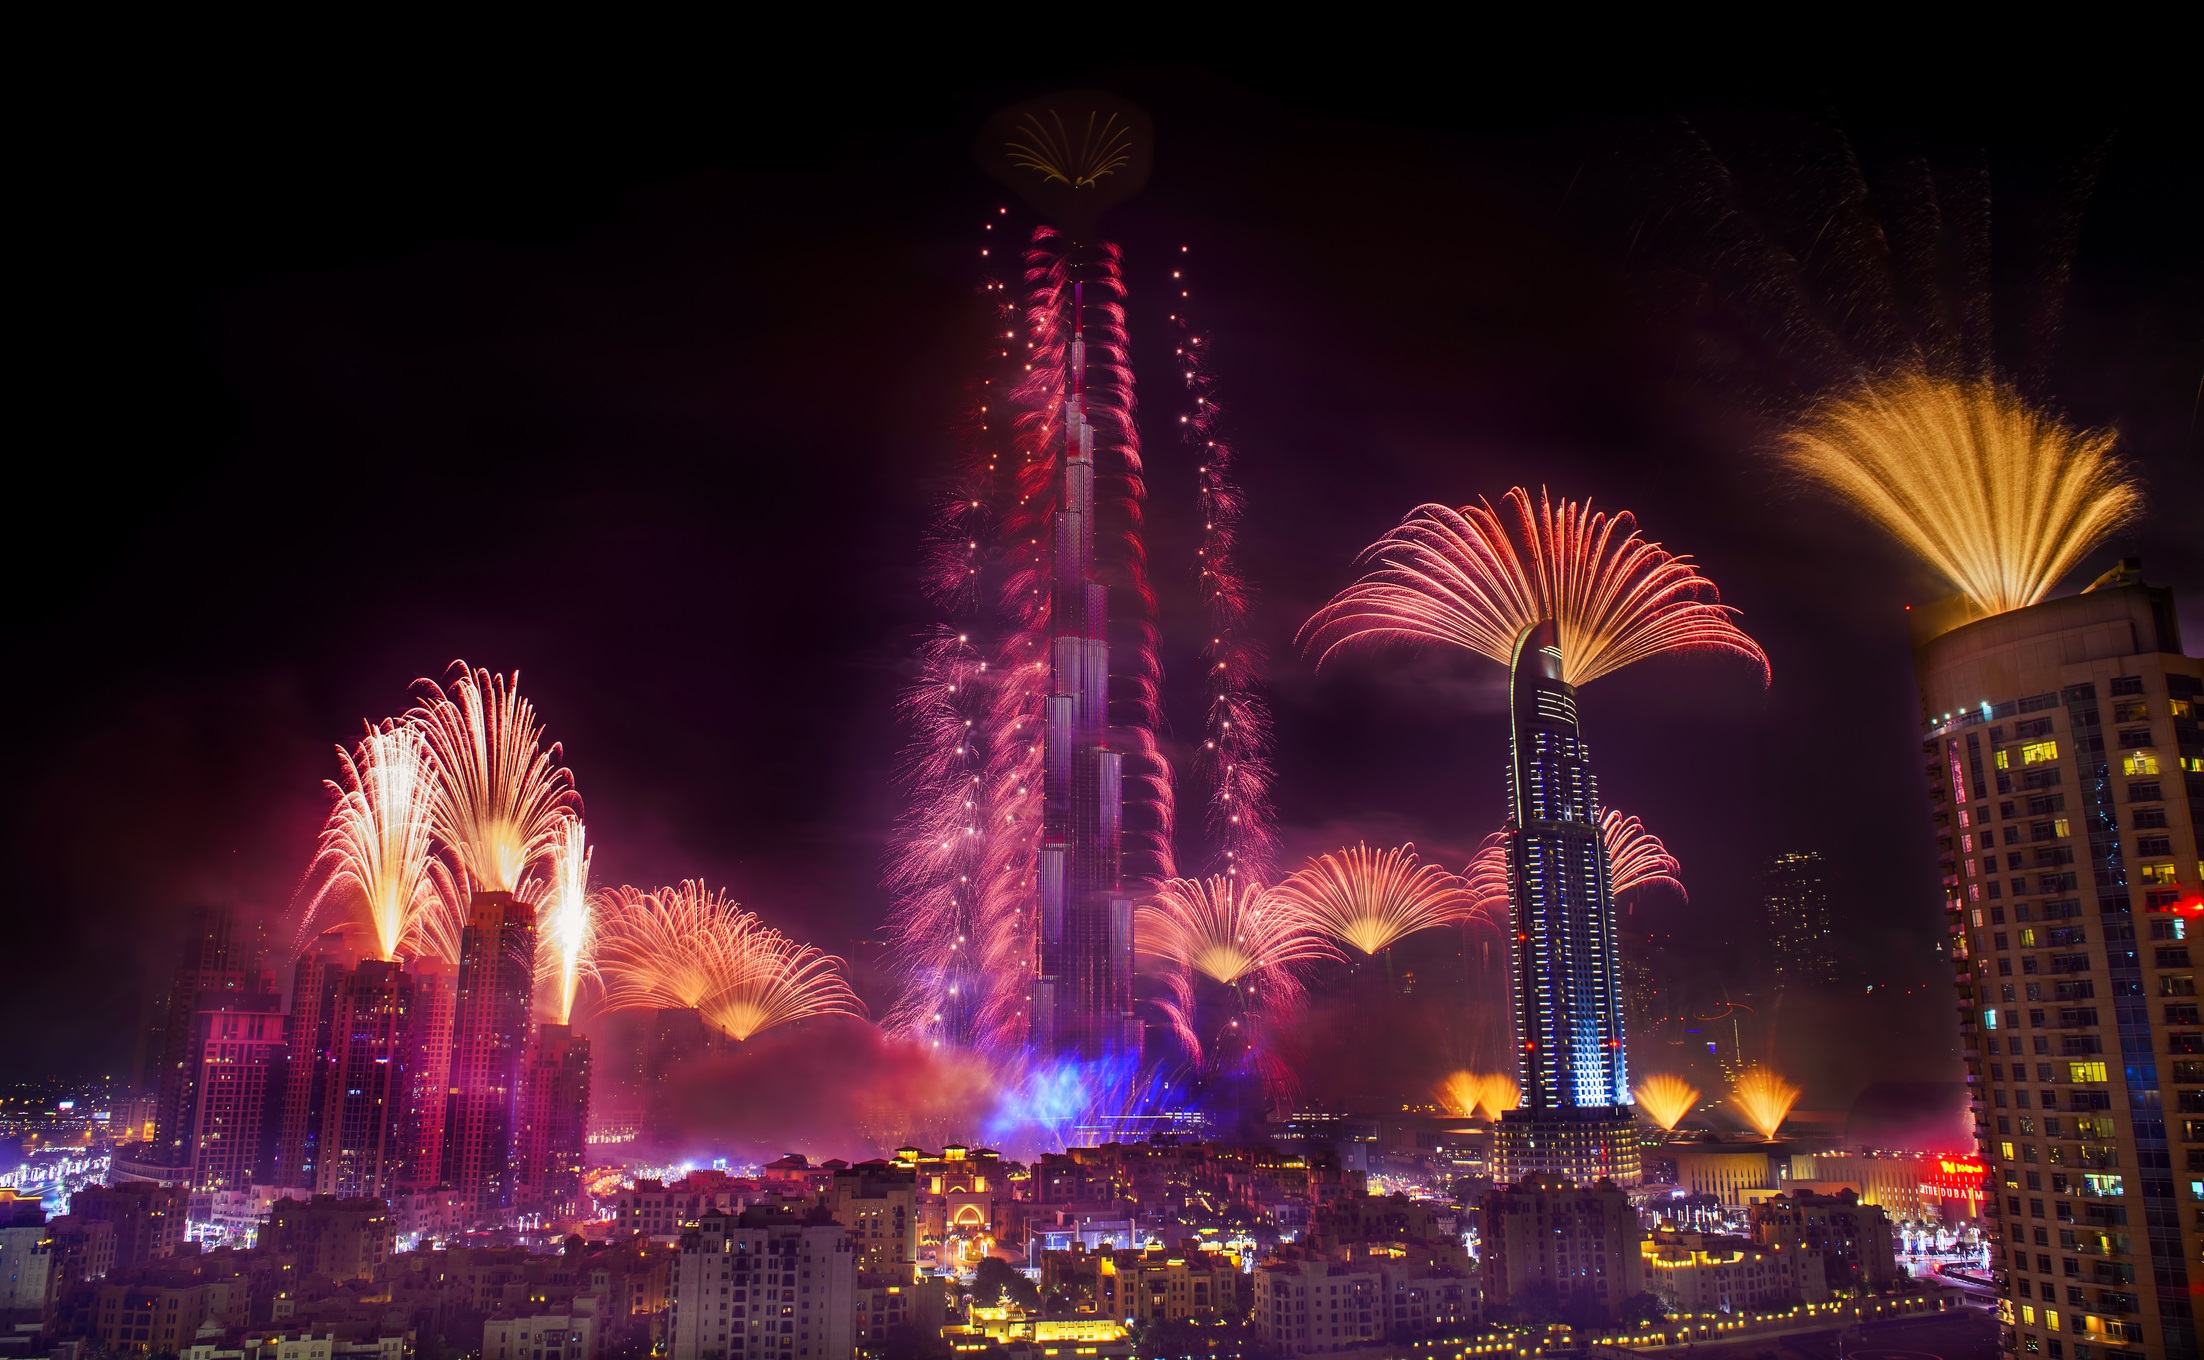 <p><strong>Дубай</strong></p>

<p>Бурж Халифа е един от най-забележителните небостъргачи в света и държи рекорда за най-висока сграда в света. Огромни тълпи се събират всяка година край Бурц Халифа за уникално шоу с фойерверки, бъдете там и вие.</p>